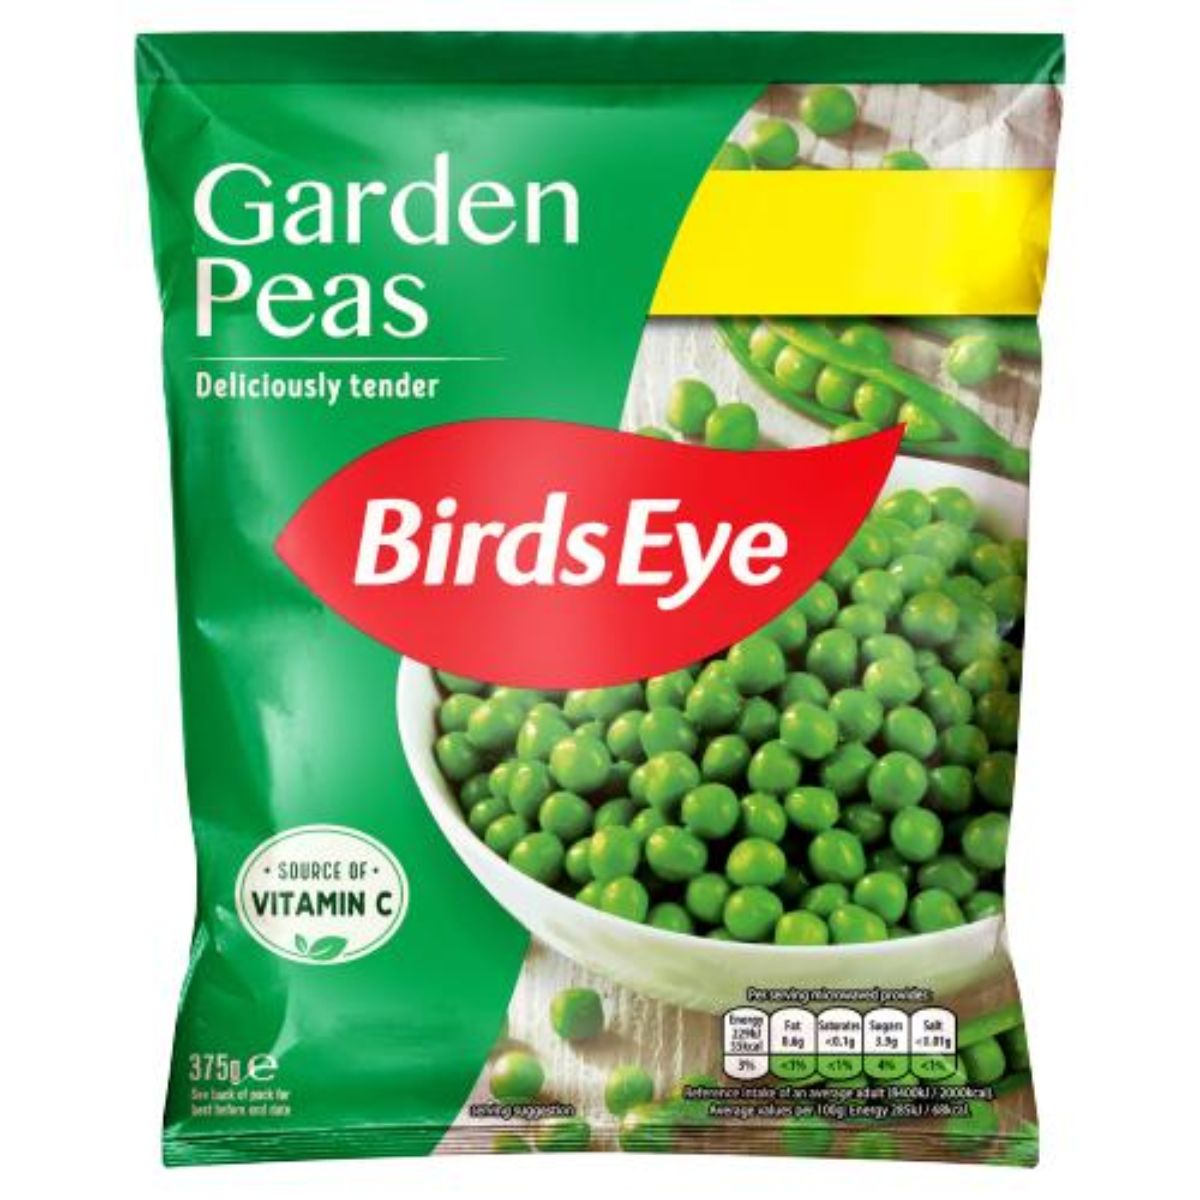 A bag of Birds Eye - Garden Peas - 375g.